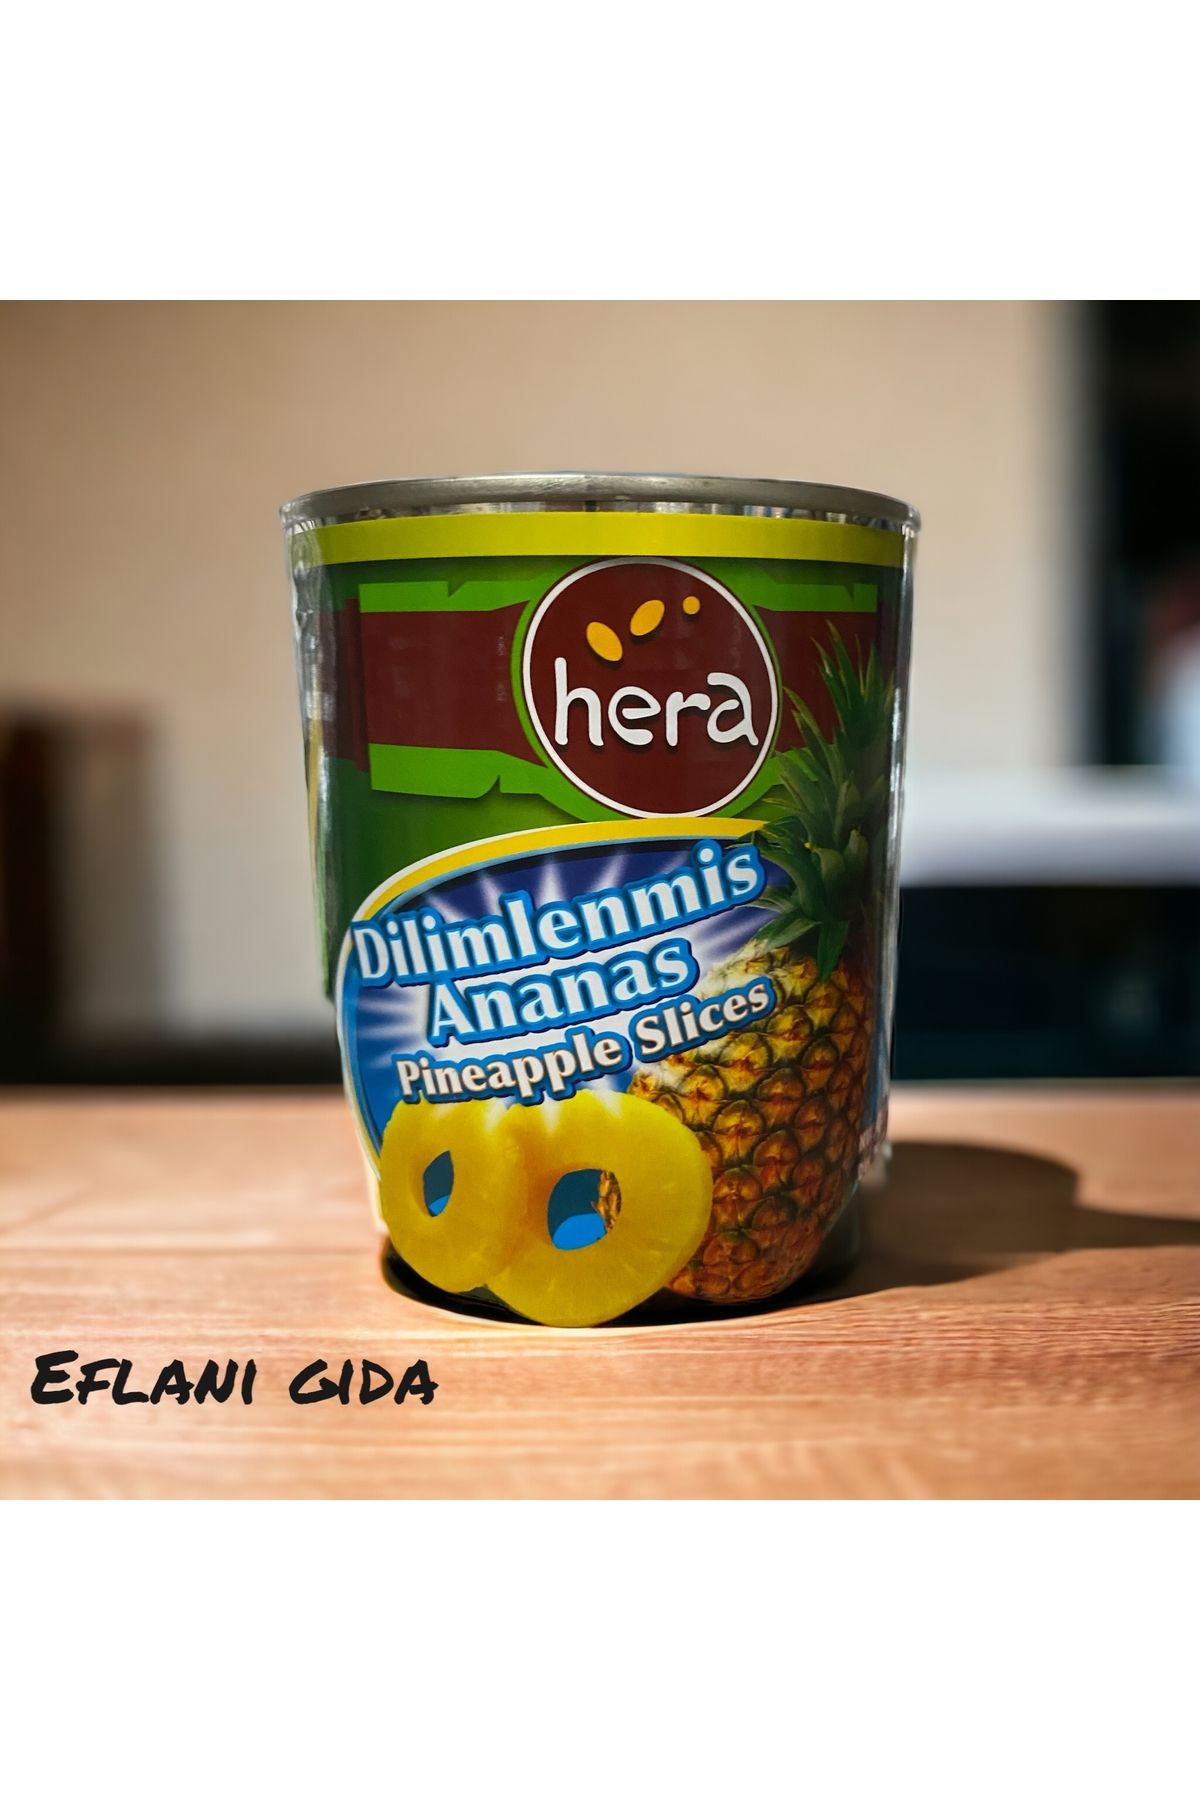 Hera Ananas konserve eflani gıda